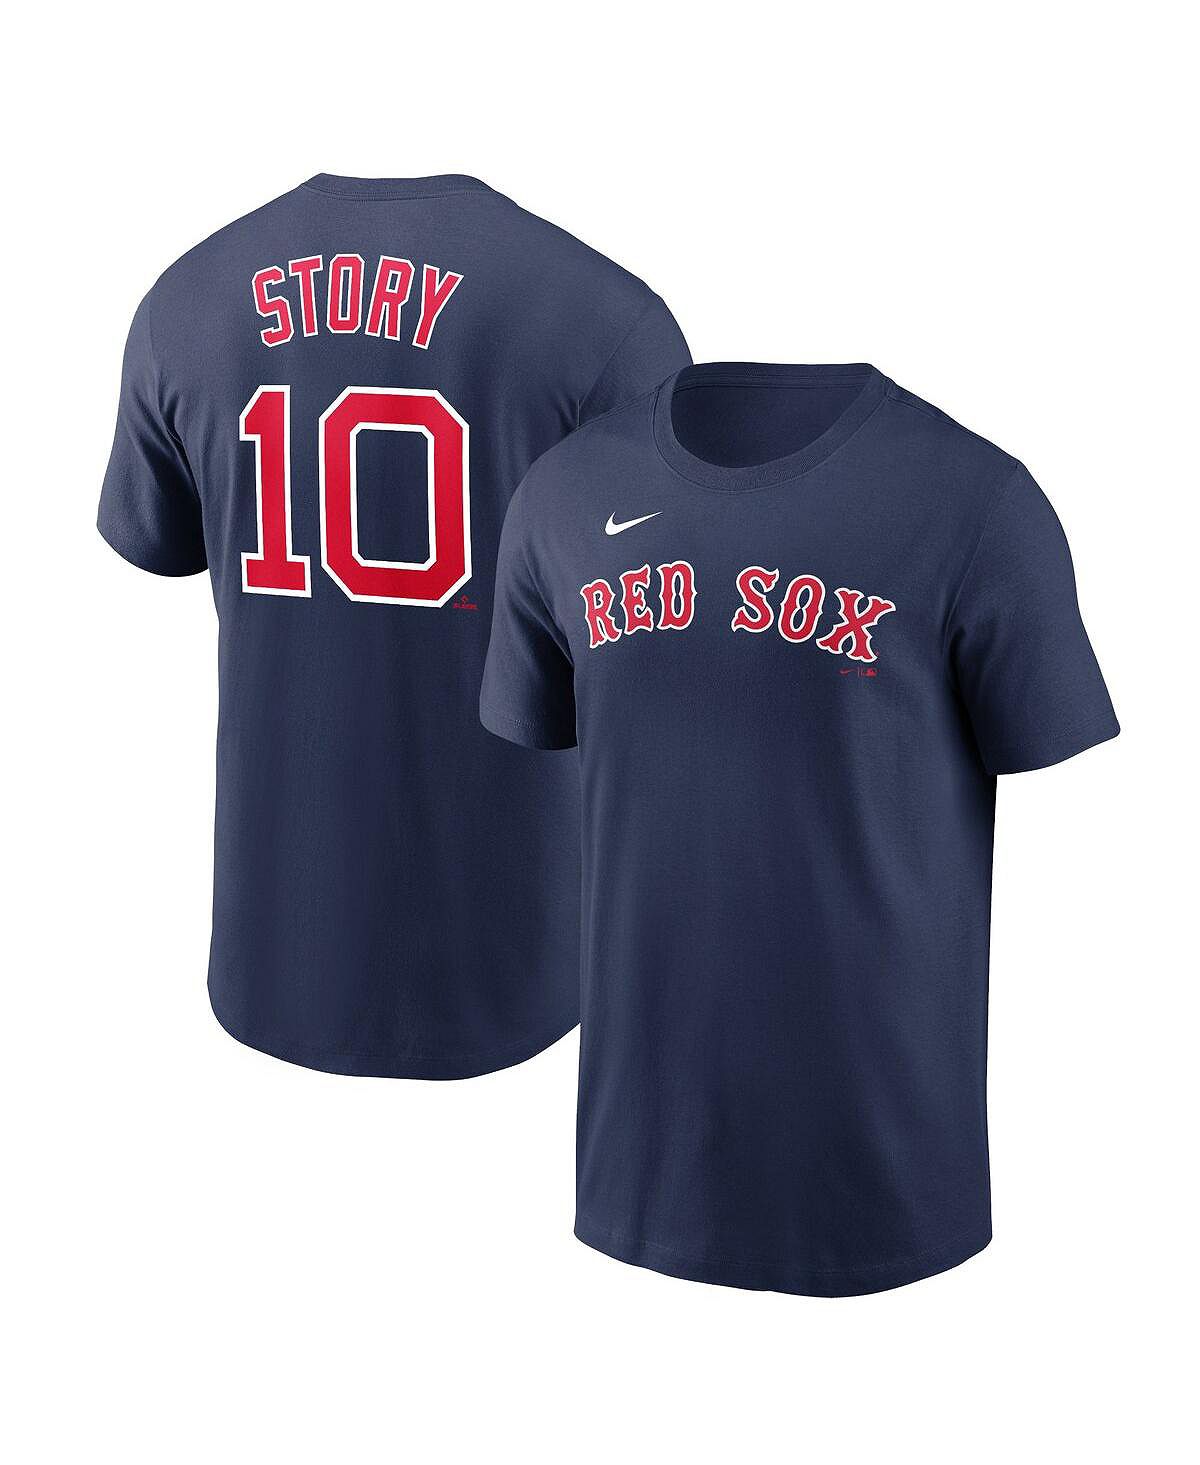 Мужская футболка trevor story navy boston red sox с именем и номером Nike, синий